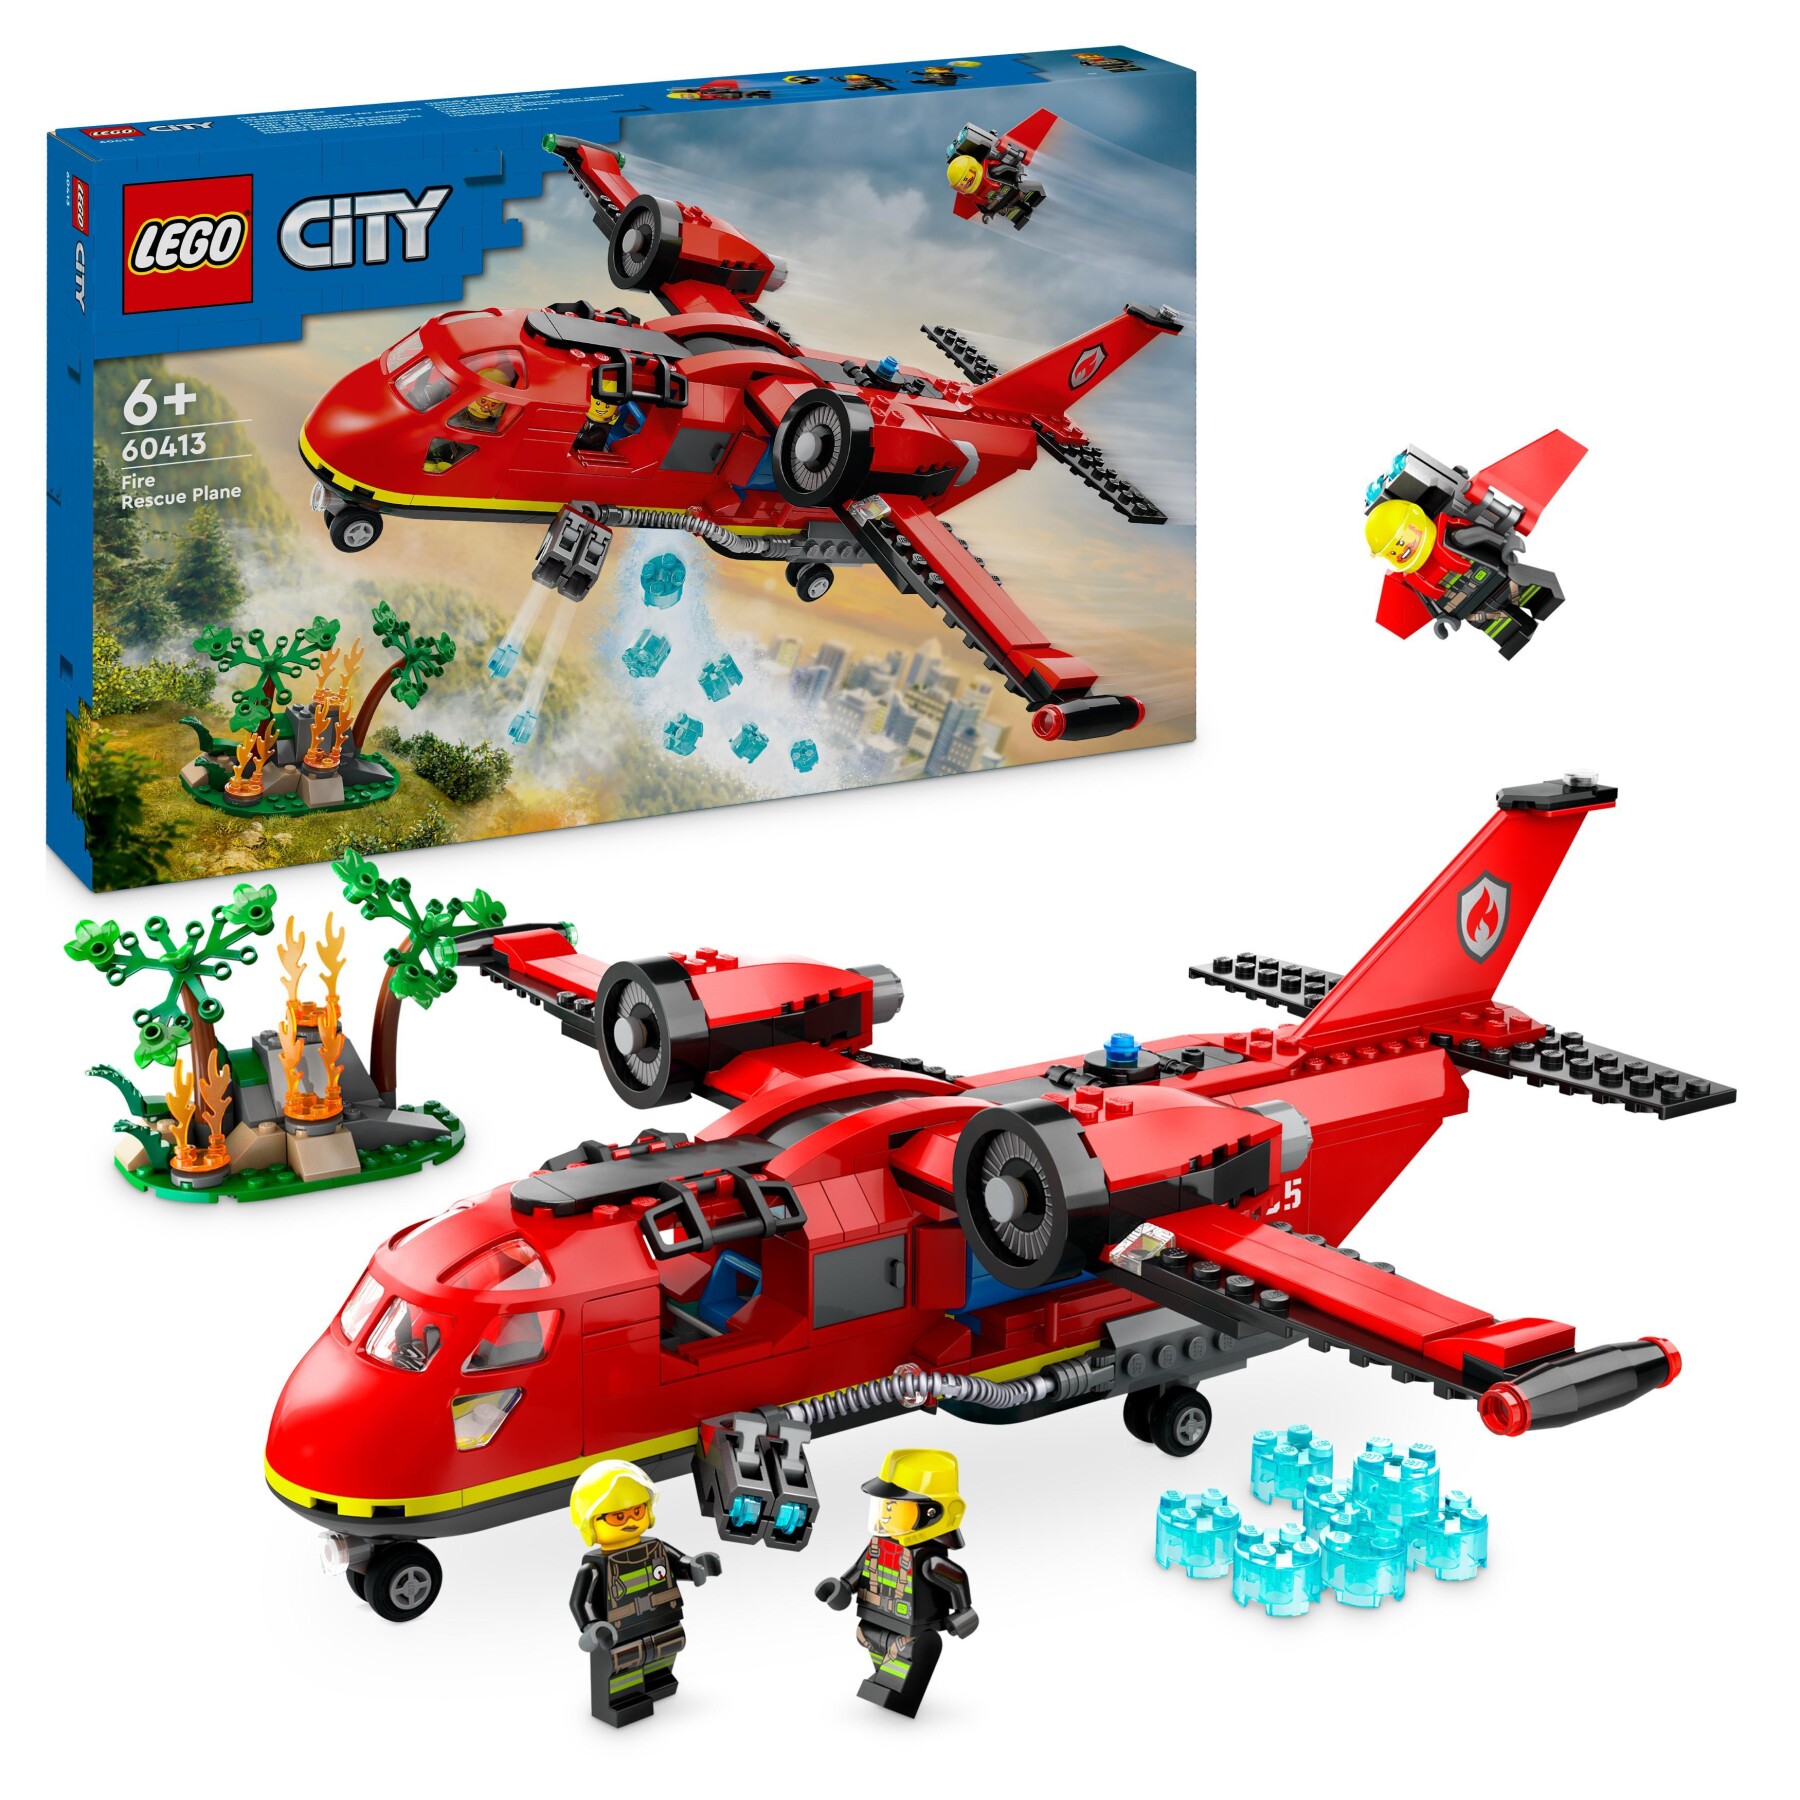 Lego city 60413 aereo antincendio, giocattolo dei vigili del fuoco per bambini di 6+ anni con 3 minifigure dei pompieri - LEGO CITY